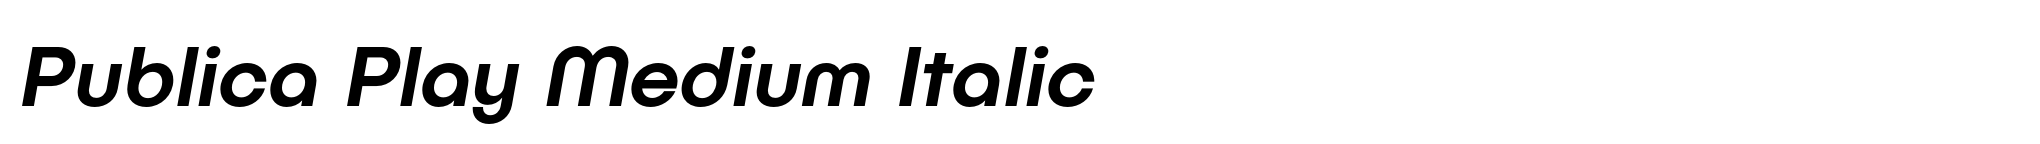 Publica Play Medium Italic image